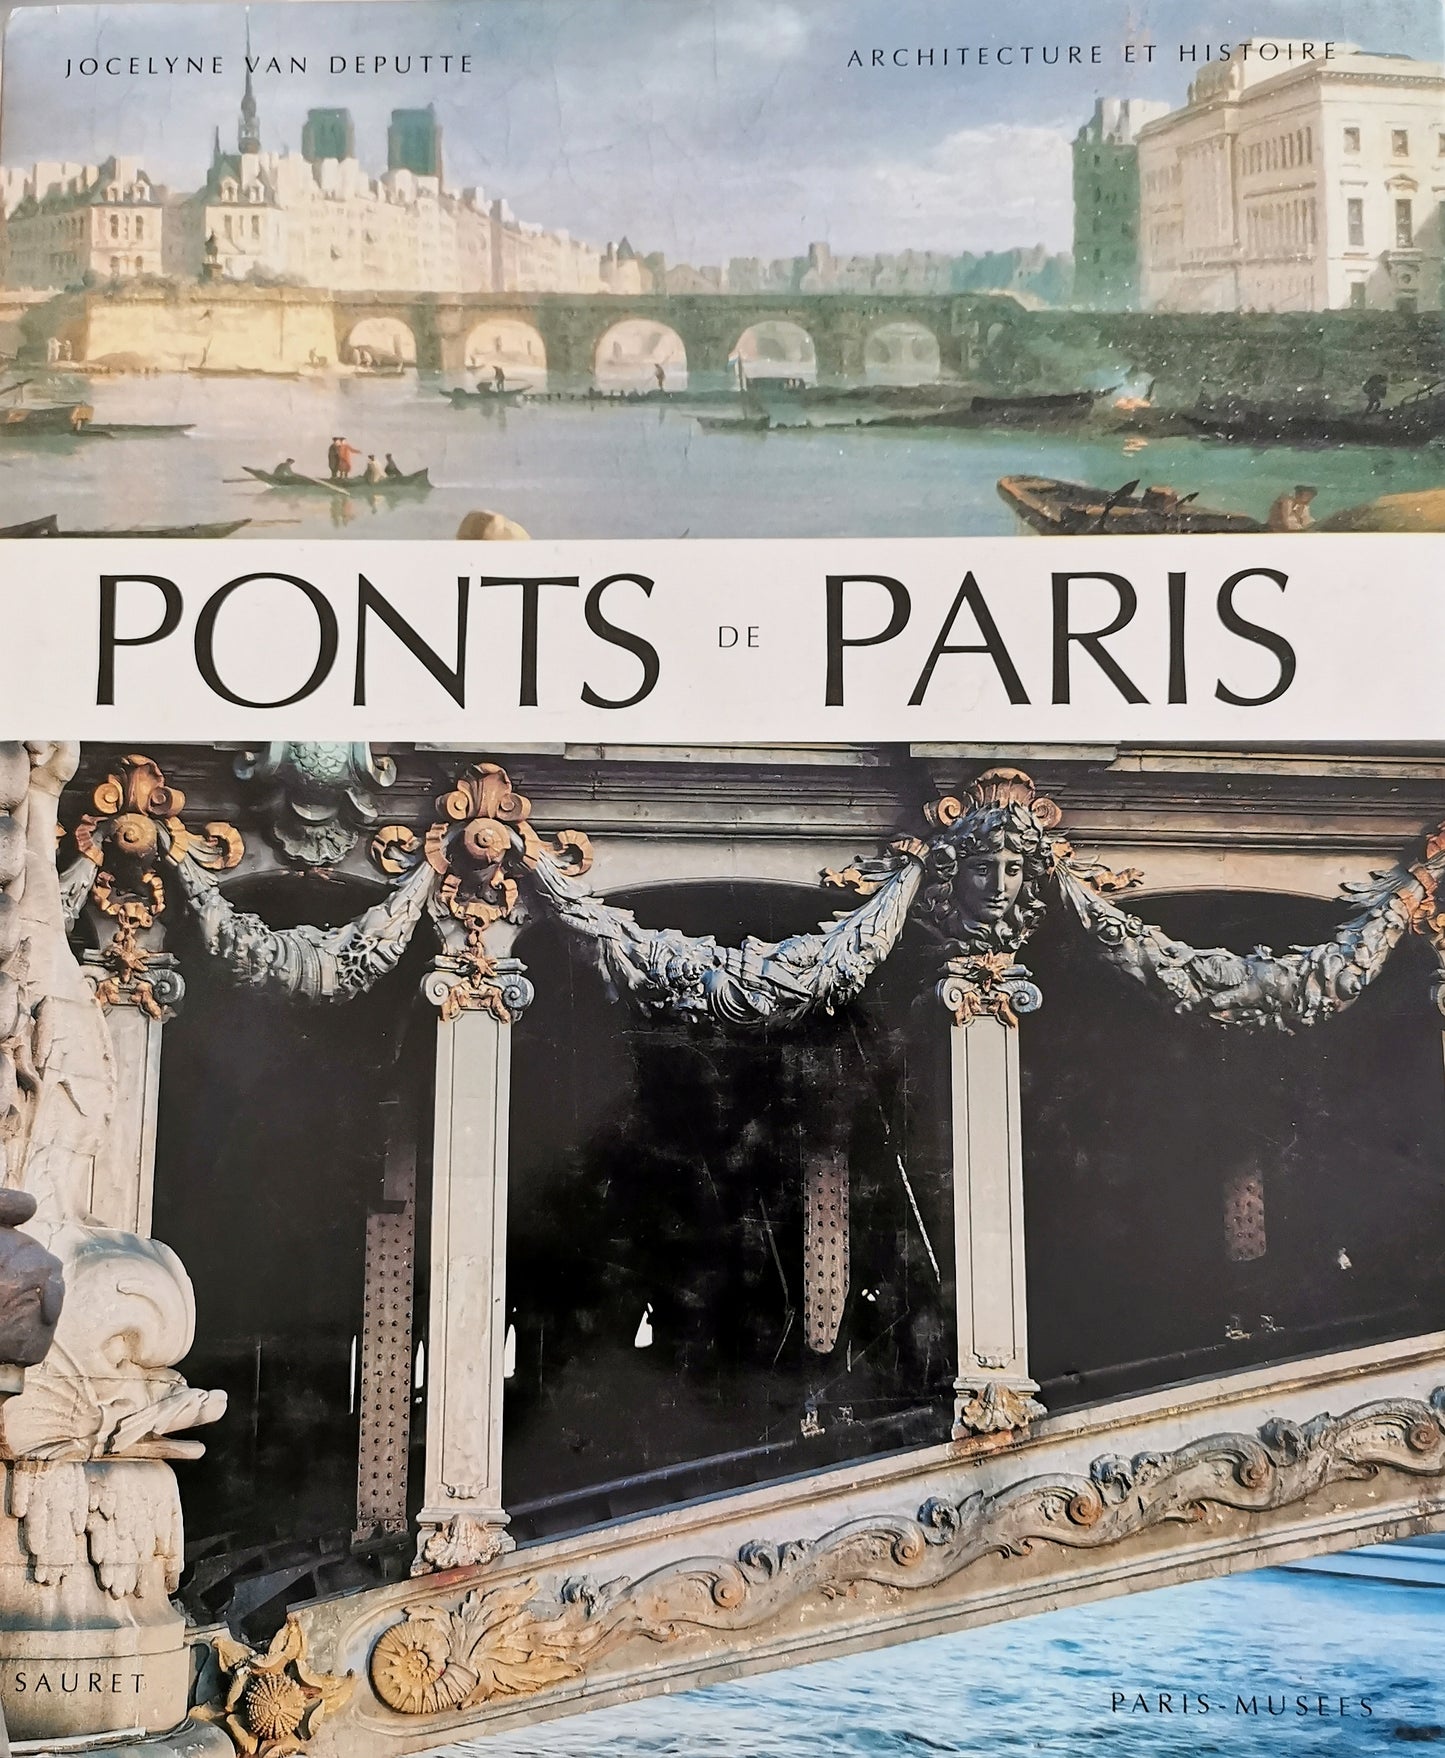 Ponts de Paris, Jocelyne van Deputte, Sauret/Paris-Musées, 1994.